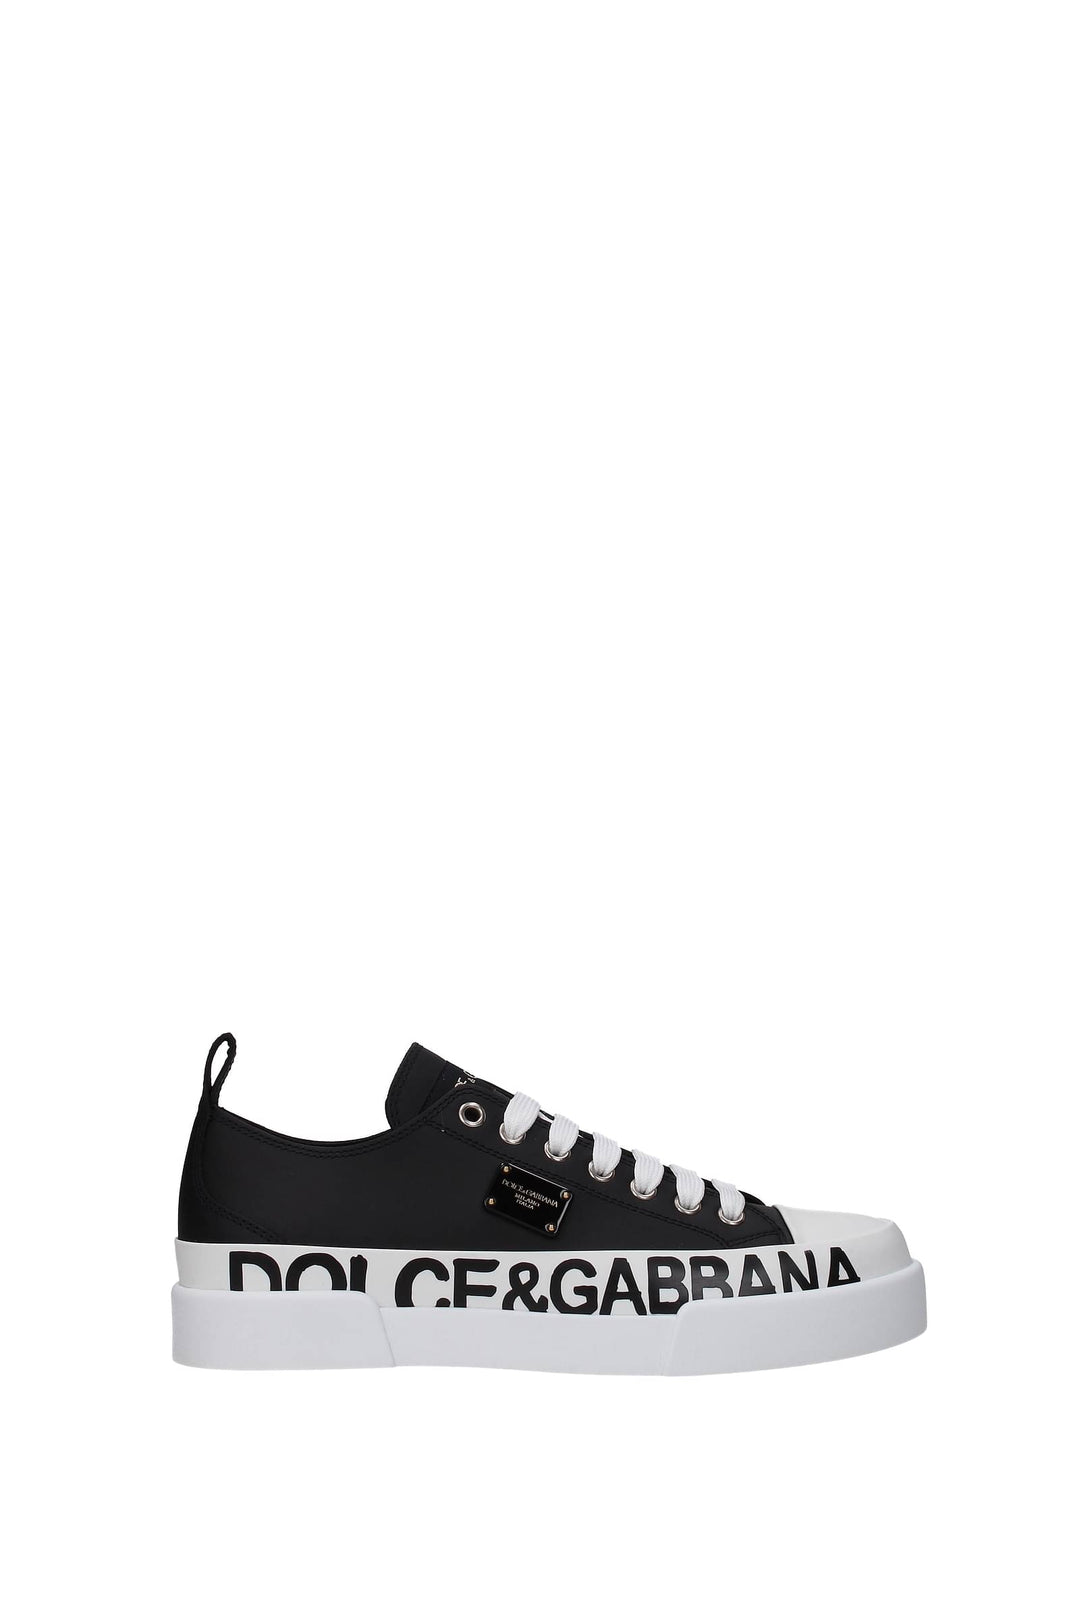 Sneakers Pelle Nero Nero - Dolce&Gabbana - Donna